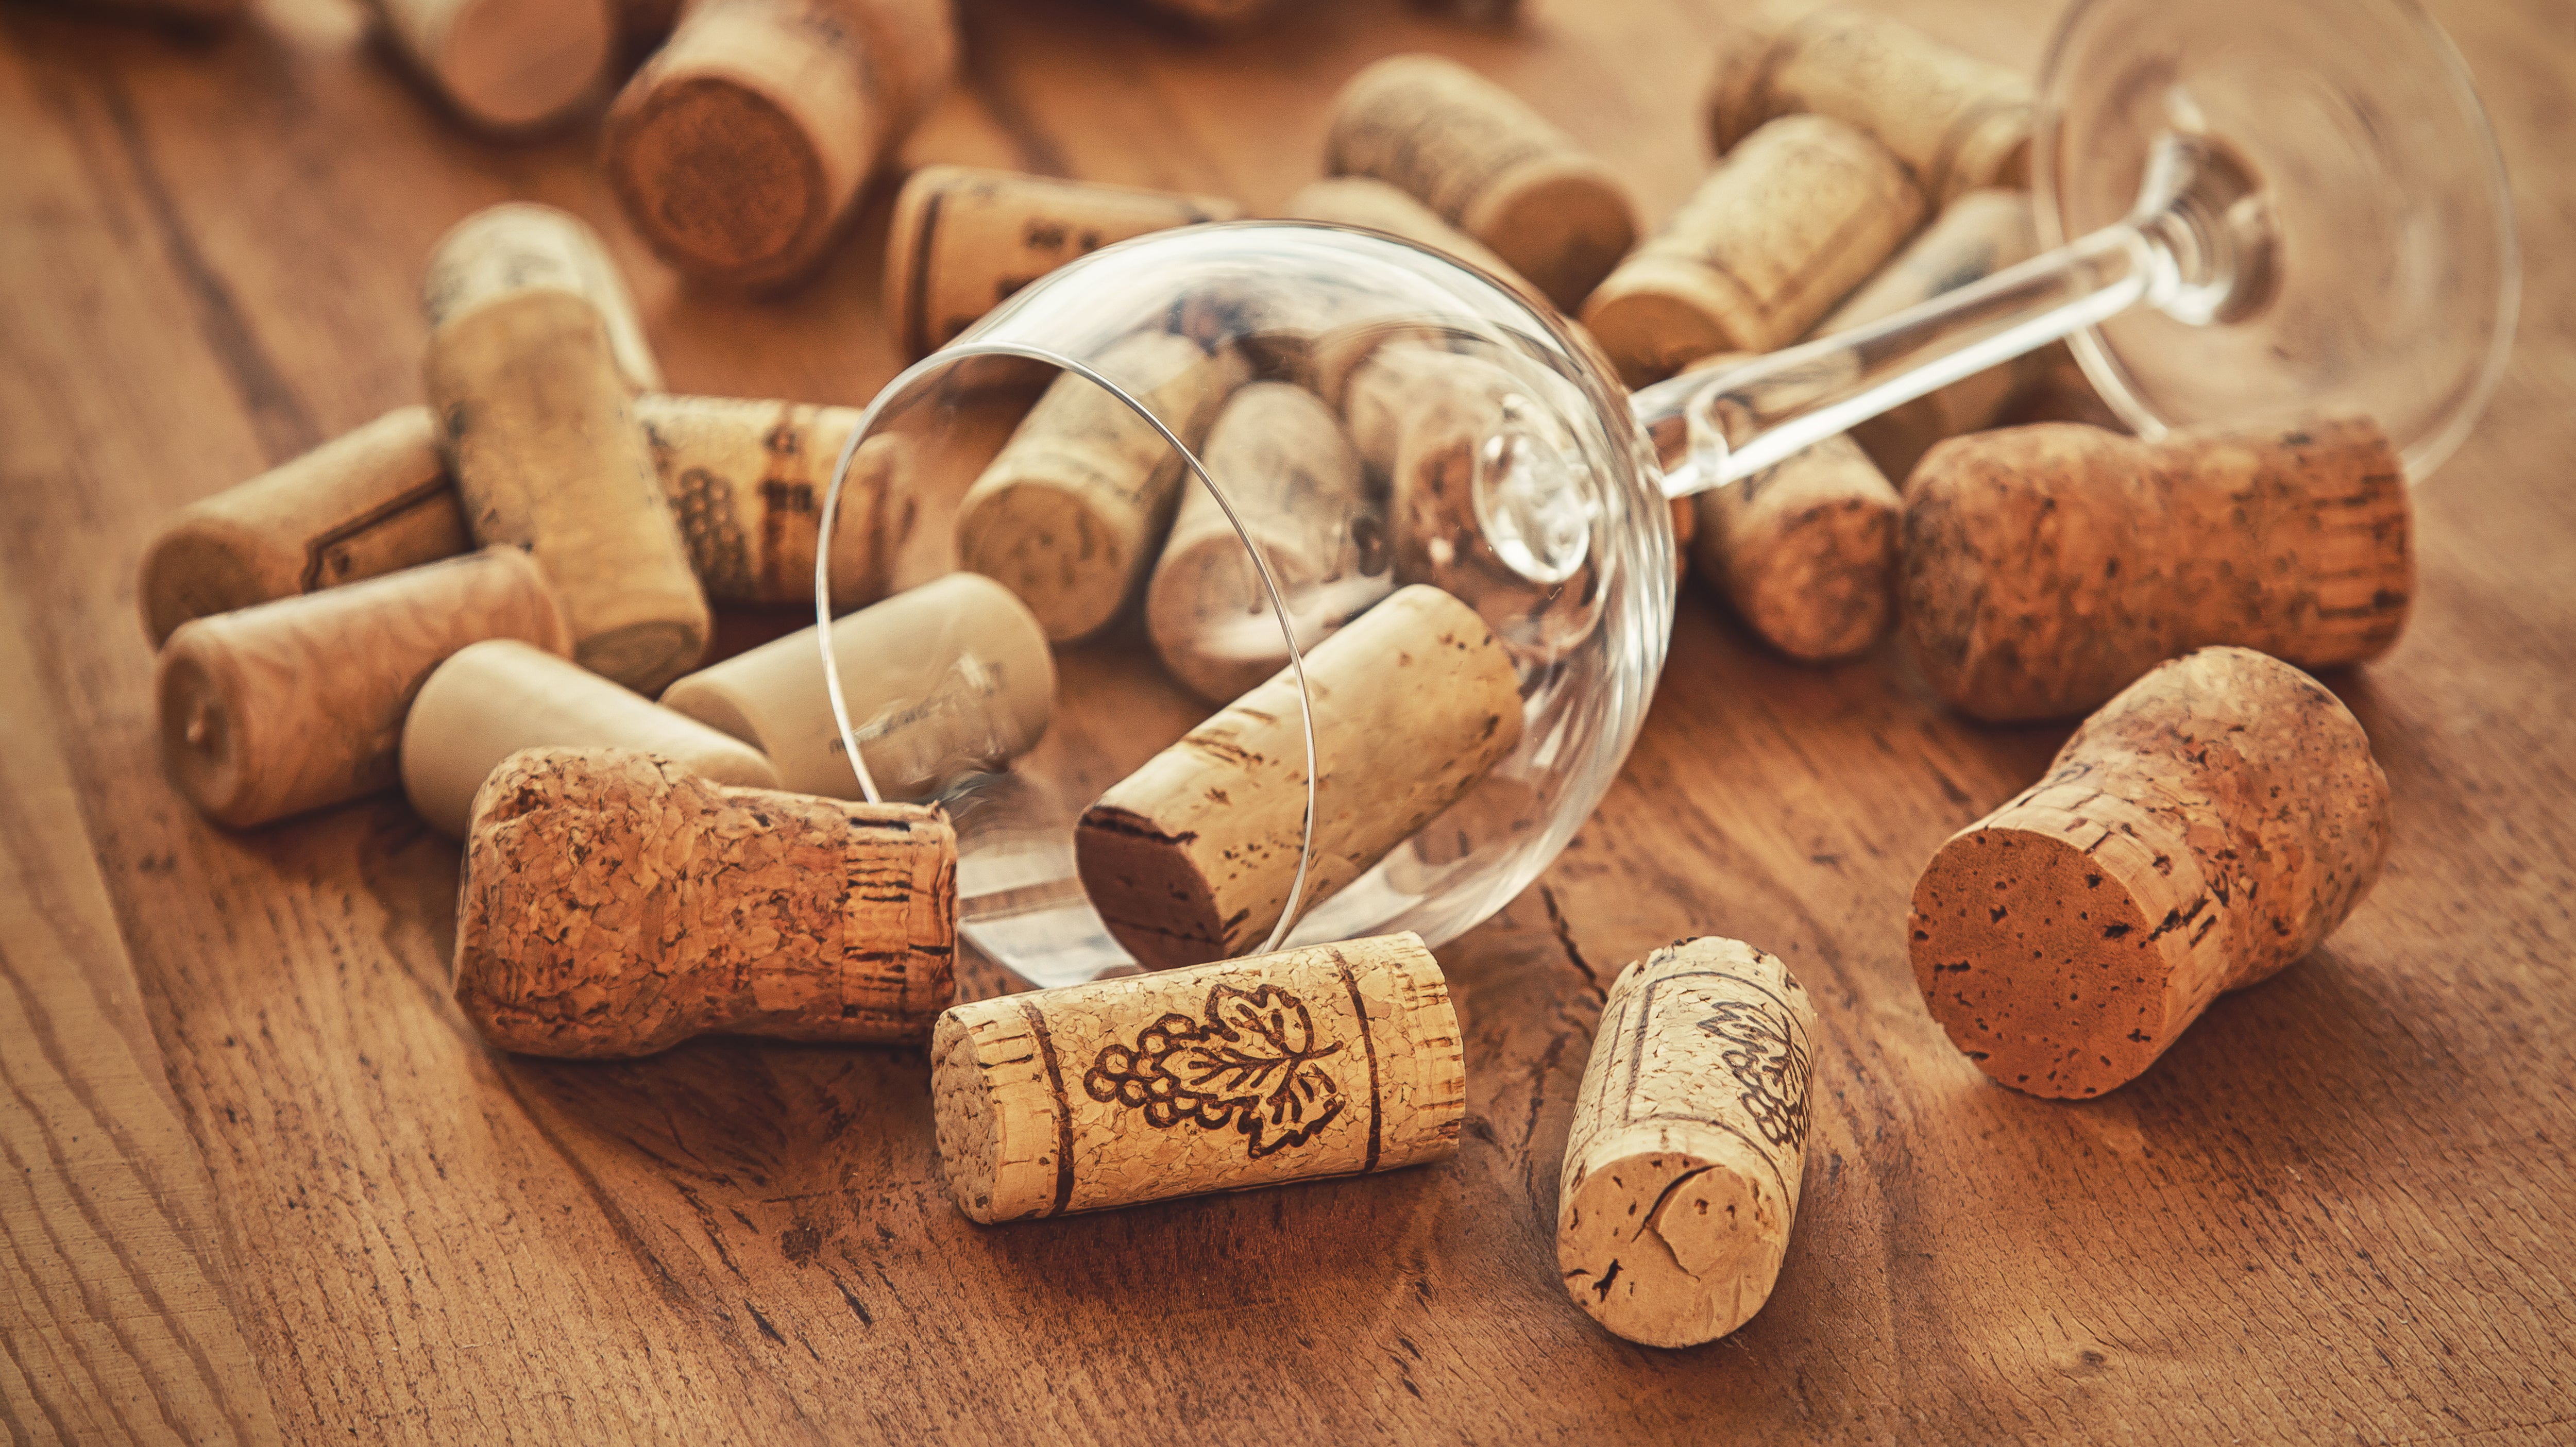 Pourquoi les bouchons de vin sont-ils en liège ? La réponse va au-delà de la bouteille